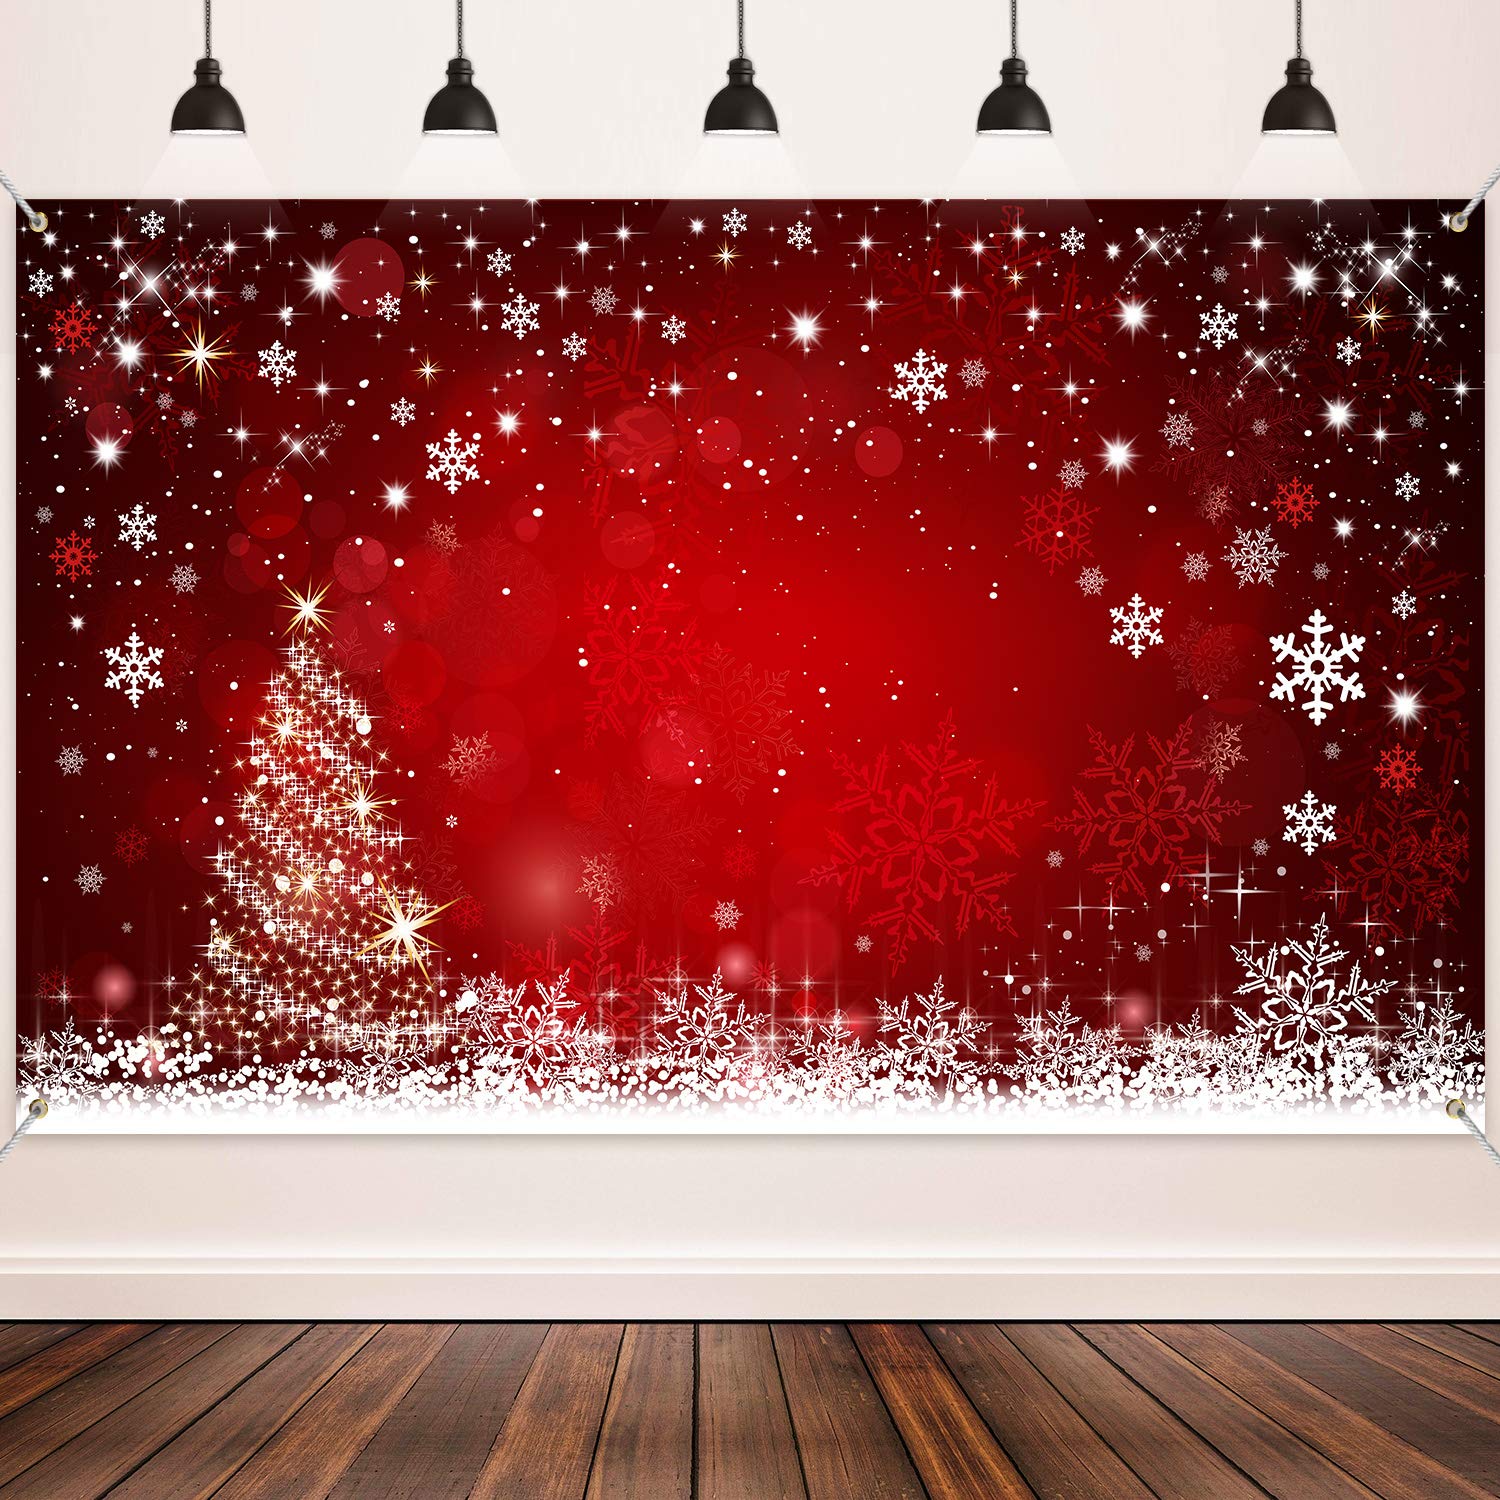 Tận hưởng mùa lễ hội Noel năm nay với những dụng cụ trang trí đầy sắc đỏ, tinh tế và chất lượng. Hãy xem ngay hình ảnh để khám phá những sản phẩm tuyệt vời để tạo ra không khí lễ hội cho ngôi nhà của bạn.